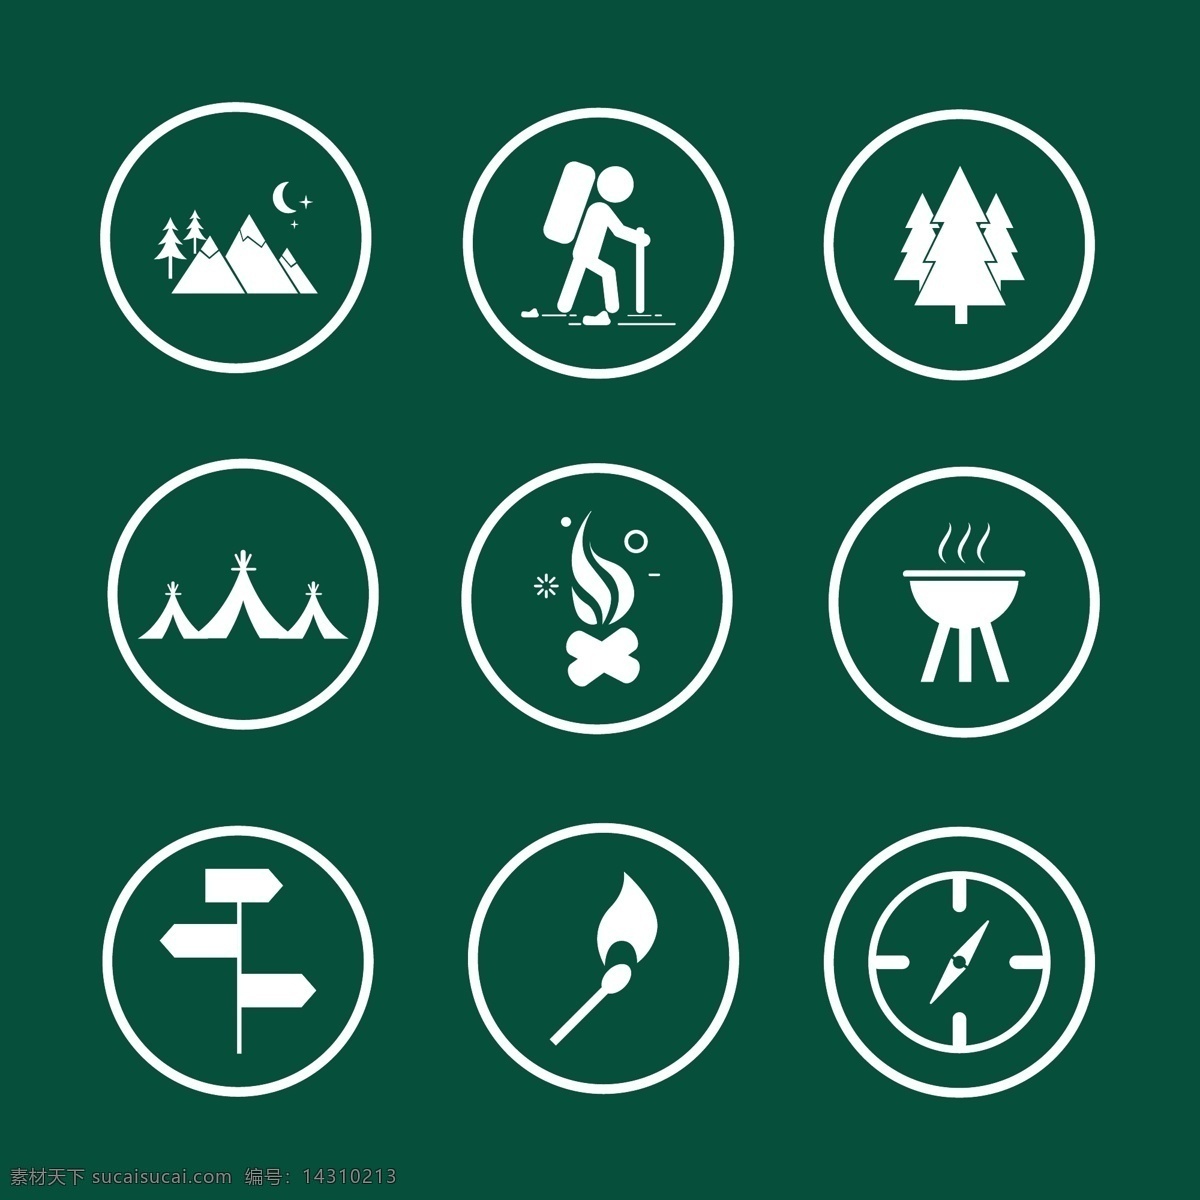 登山图标素材 图标 登山图标 登山 爬山 运动 树木 矢量素材 火焰 山 指南针